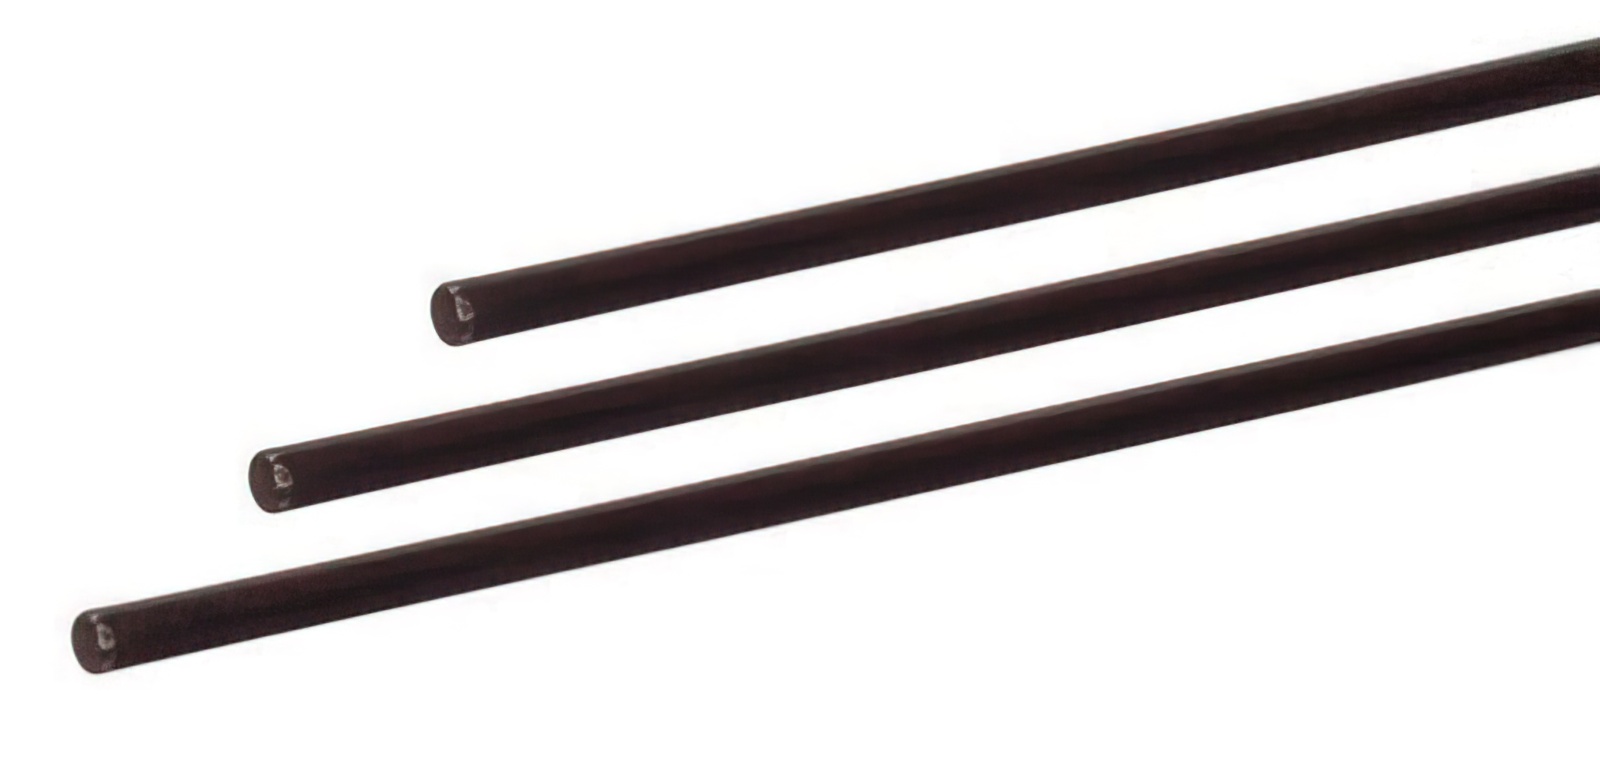 10 Stück - Gfk-Vollstab (Fiberglasstab/Glasfaserstab) 6  mm 100 cm schwarz für Drachen- und Modellbau Basteln Montagen Messebau Industrie Haushalt